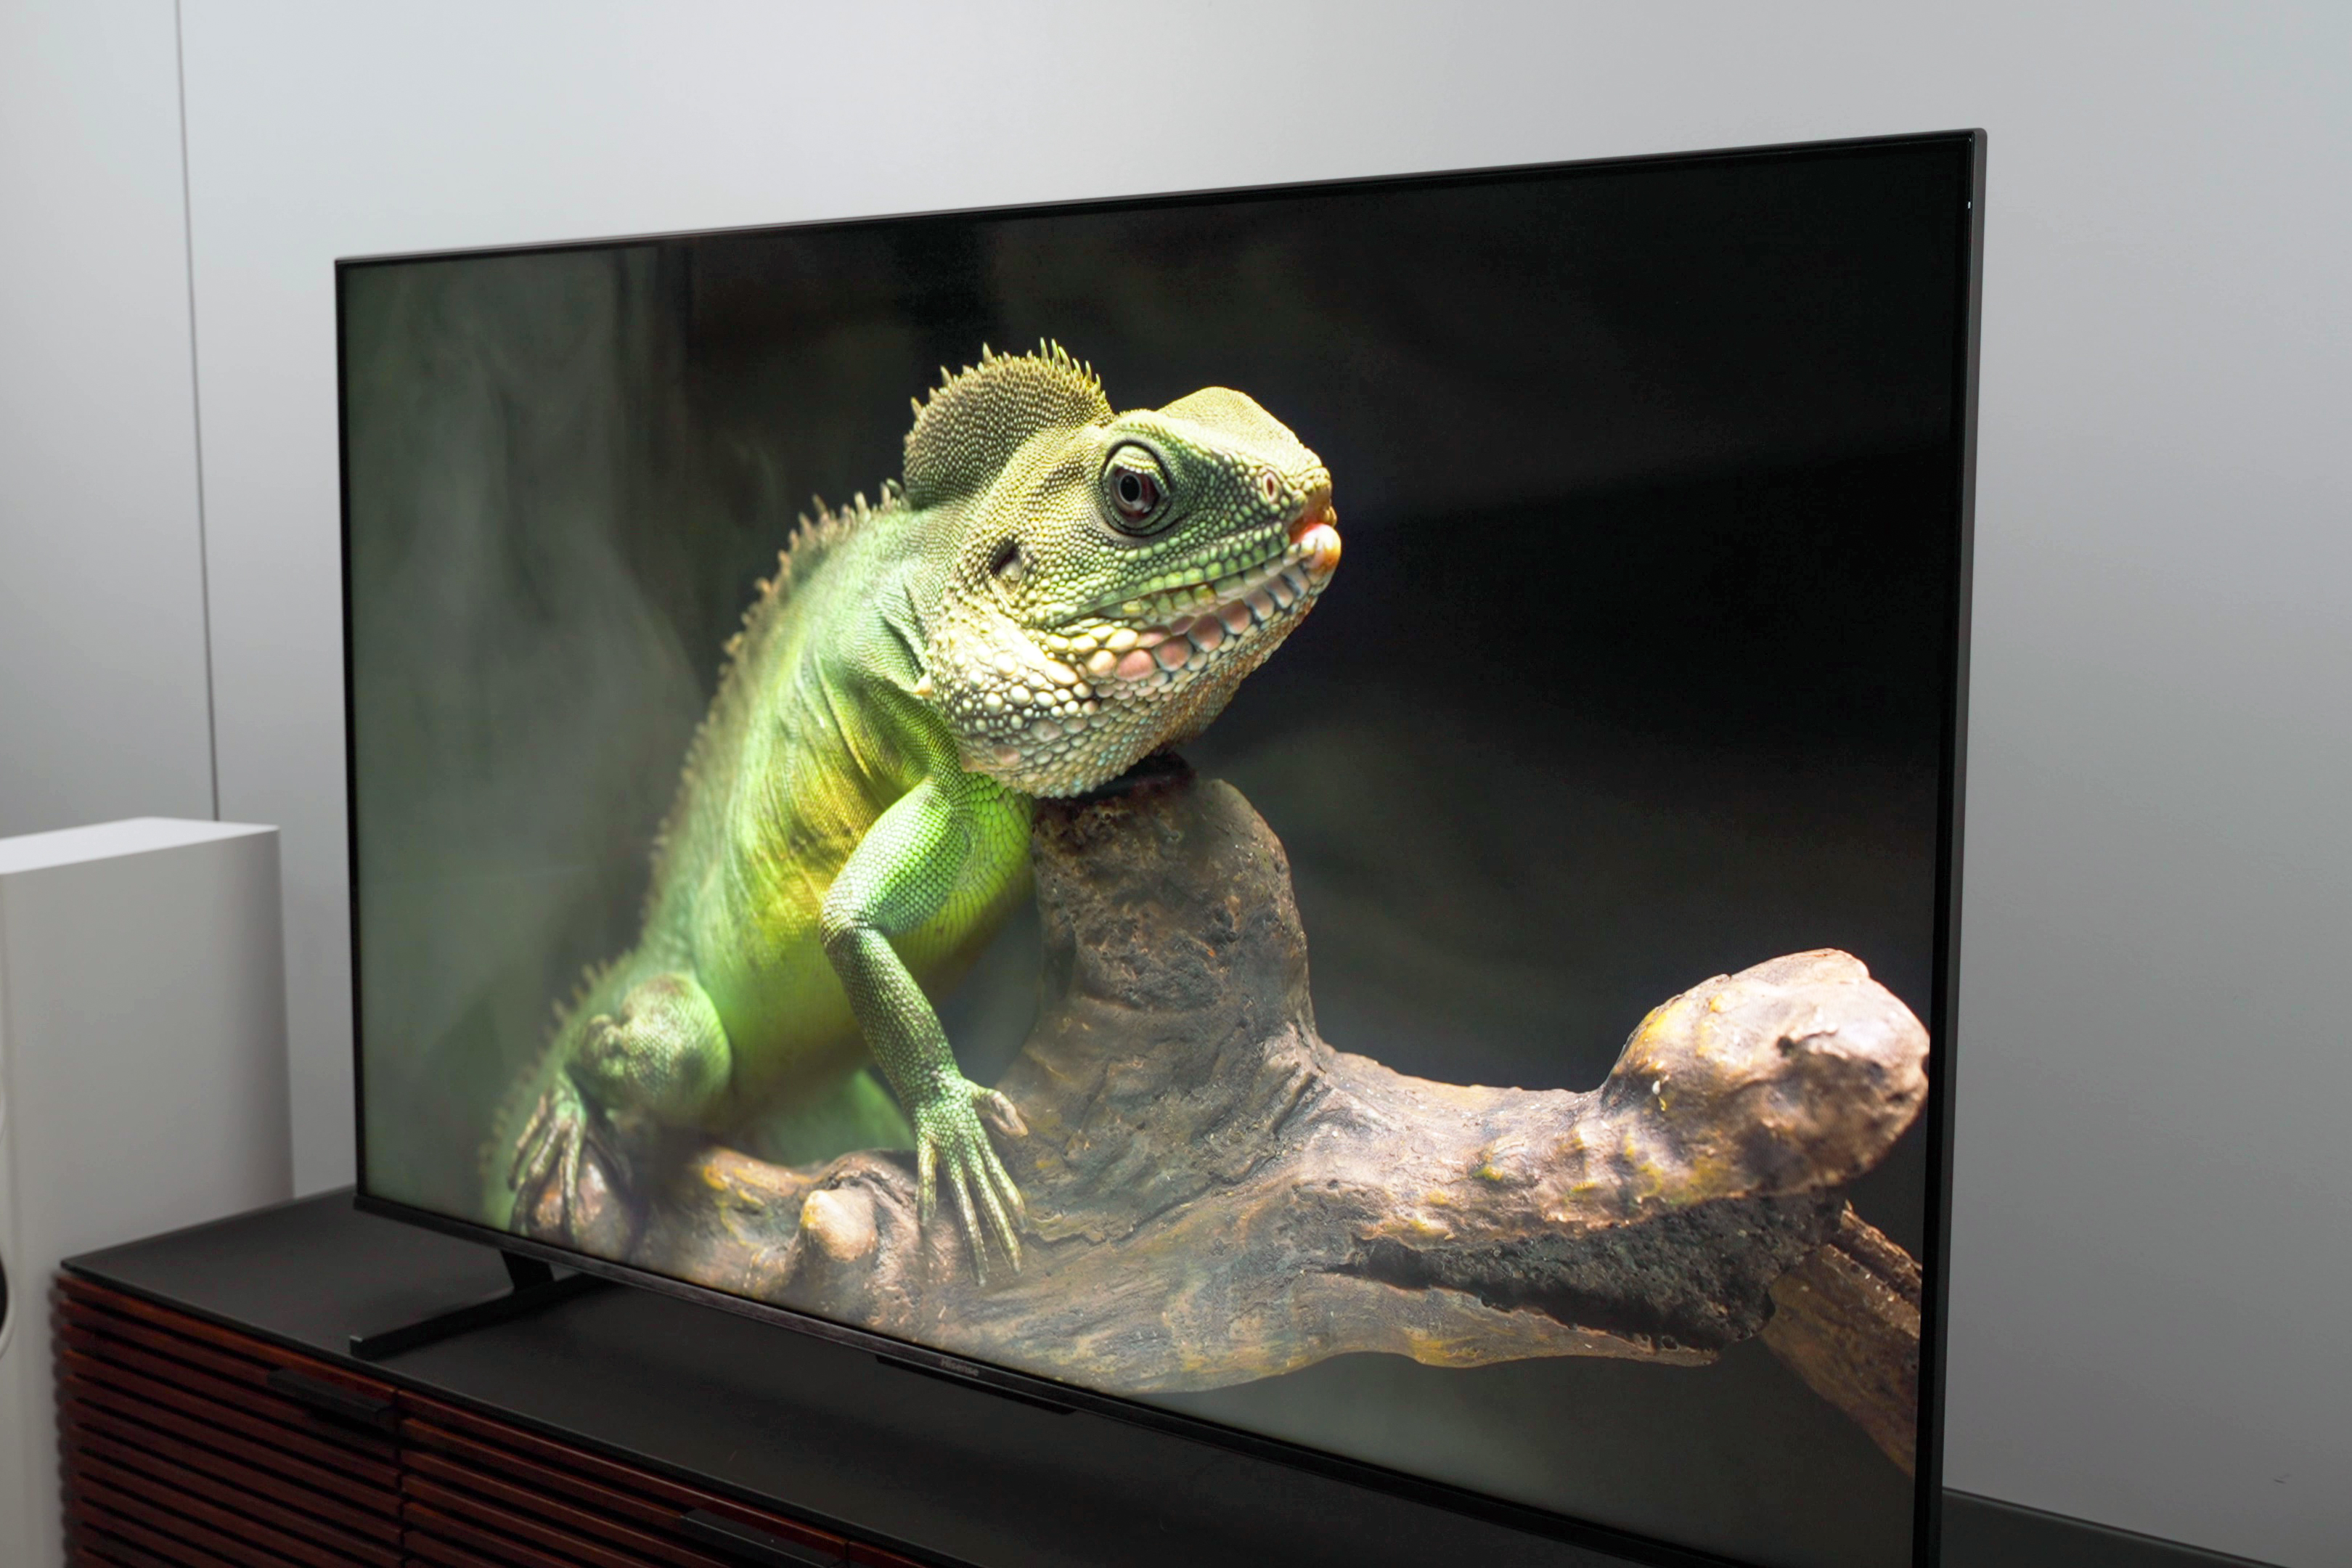 Best Hisense U8K Review: Smart TV Excellence